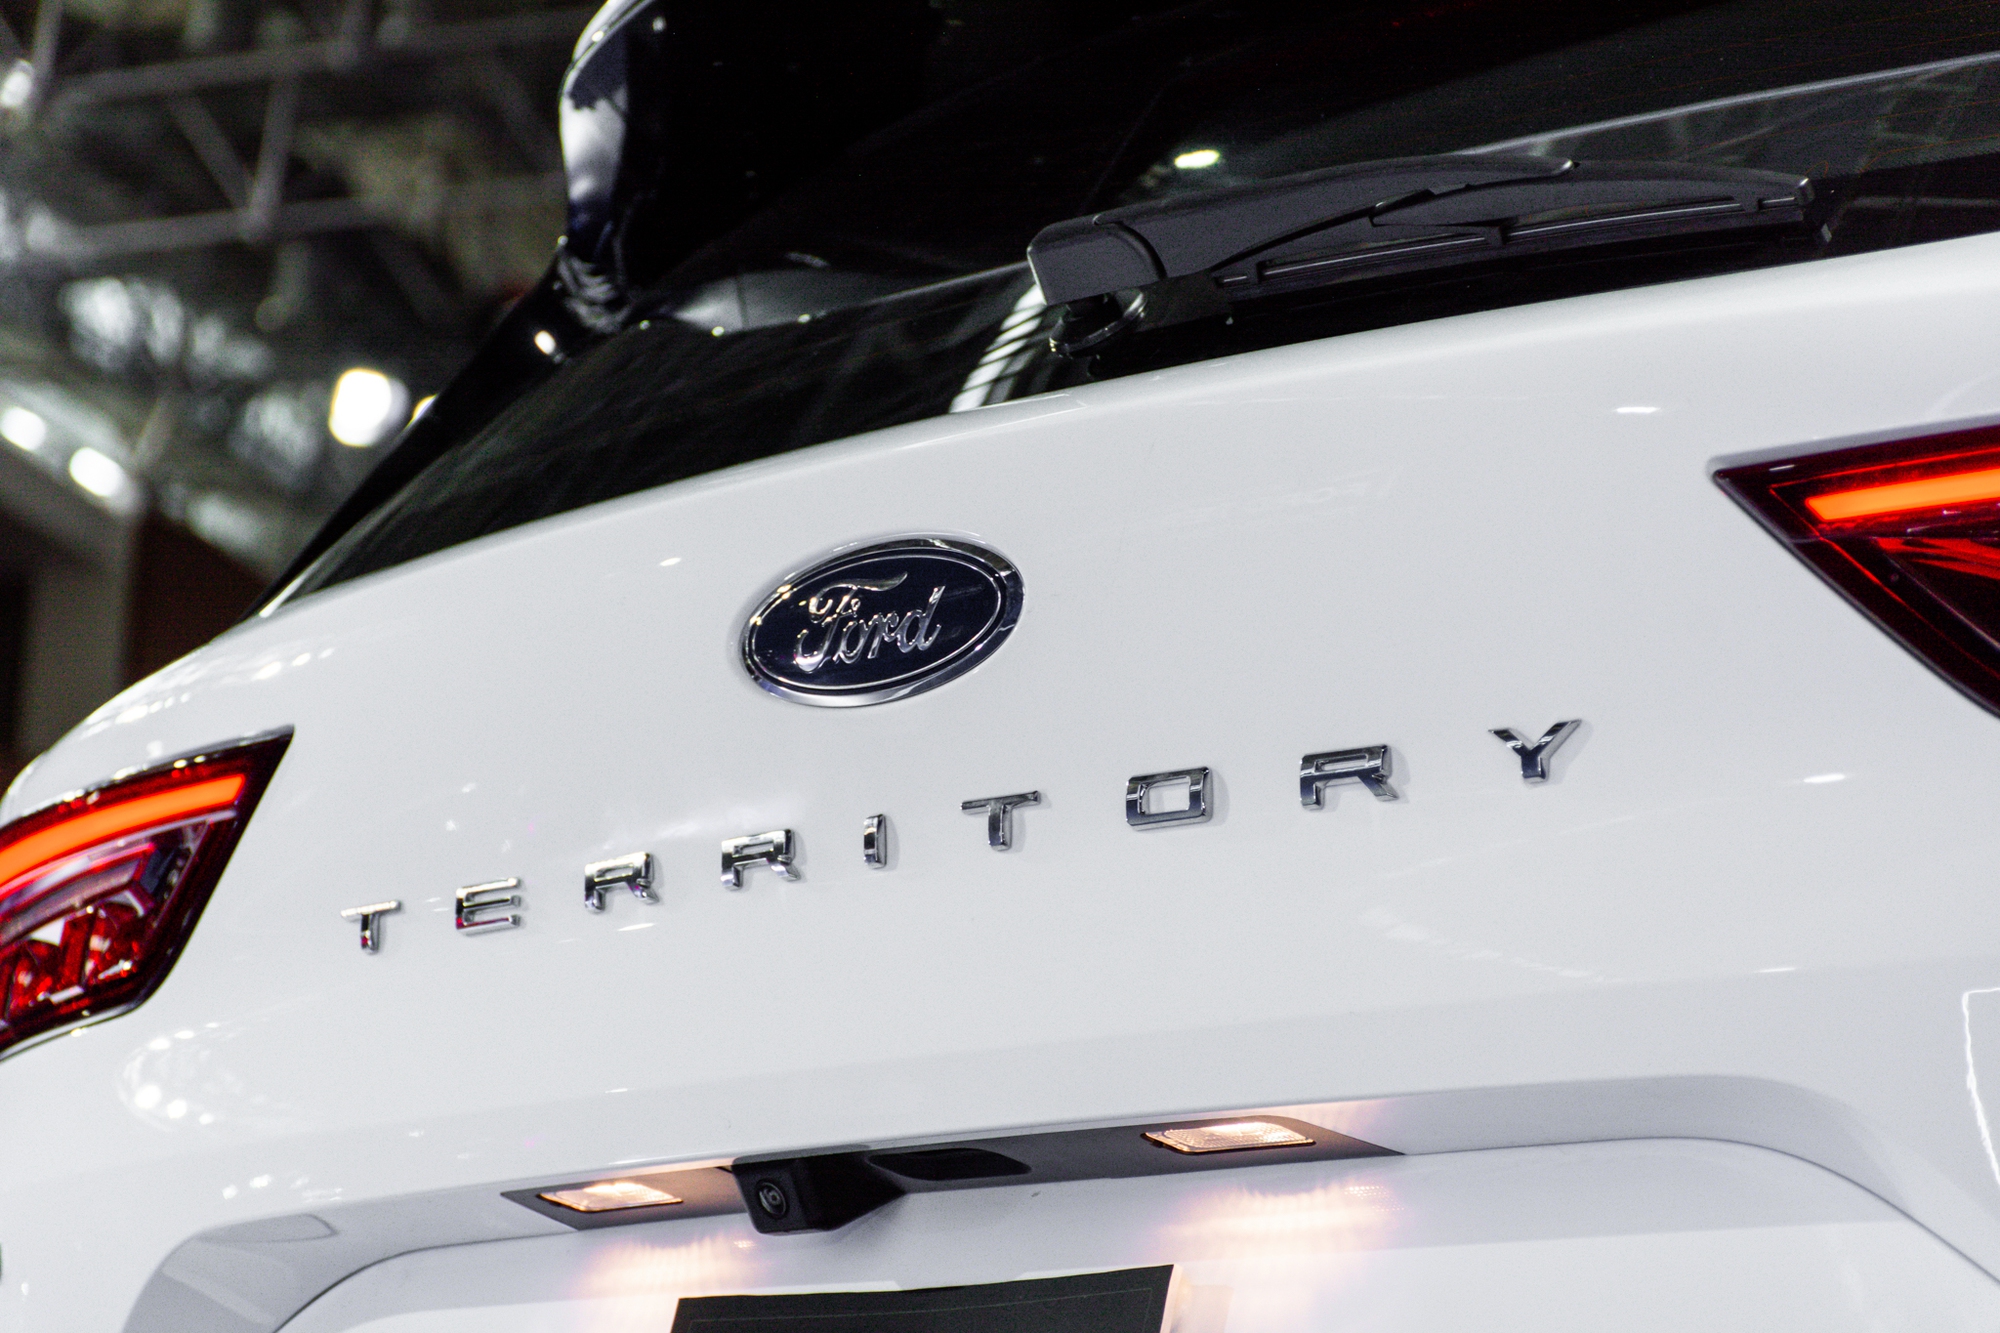 Rẻ hơn 113 triệu, Ford Territory tiêu chuẩn long lanh như bản cao cấp, đổi bằng nhiều tính năng thủ công - Ảnh 14.